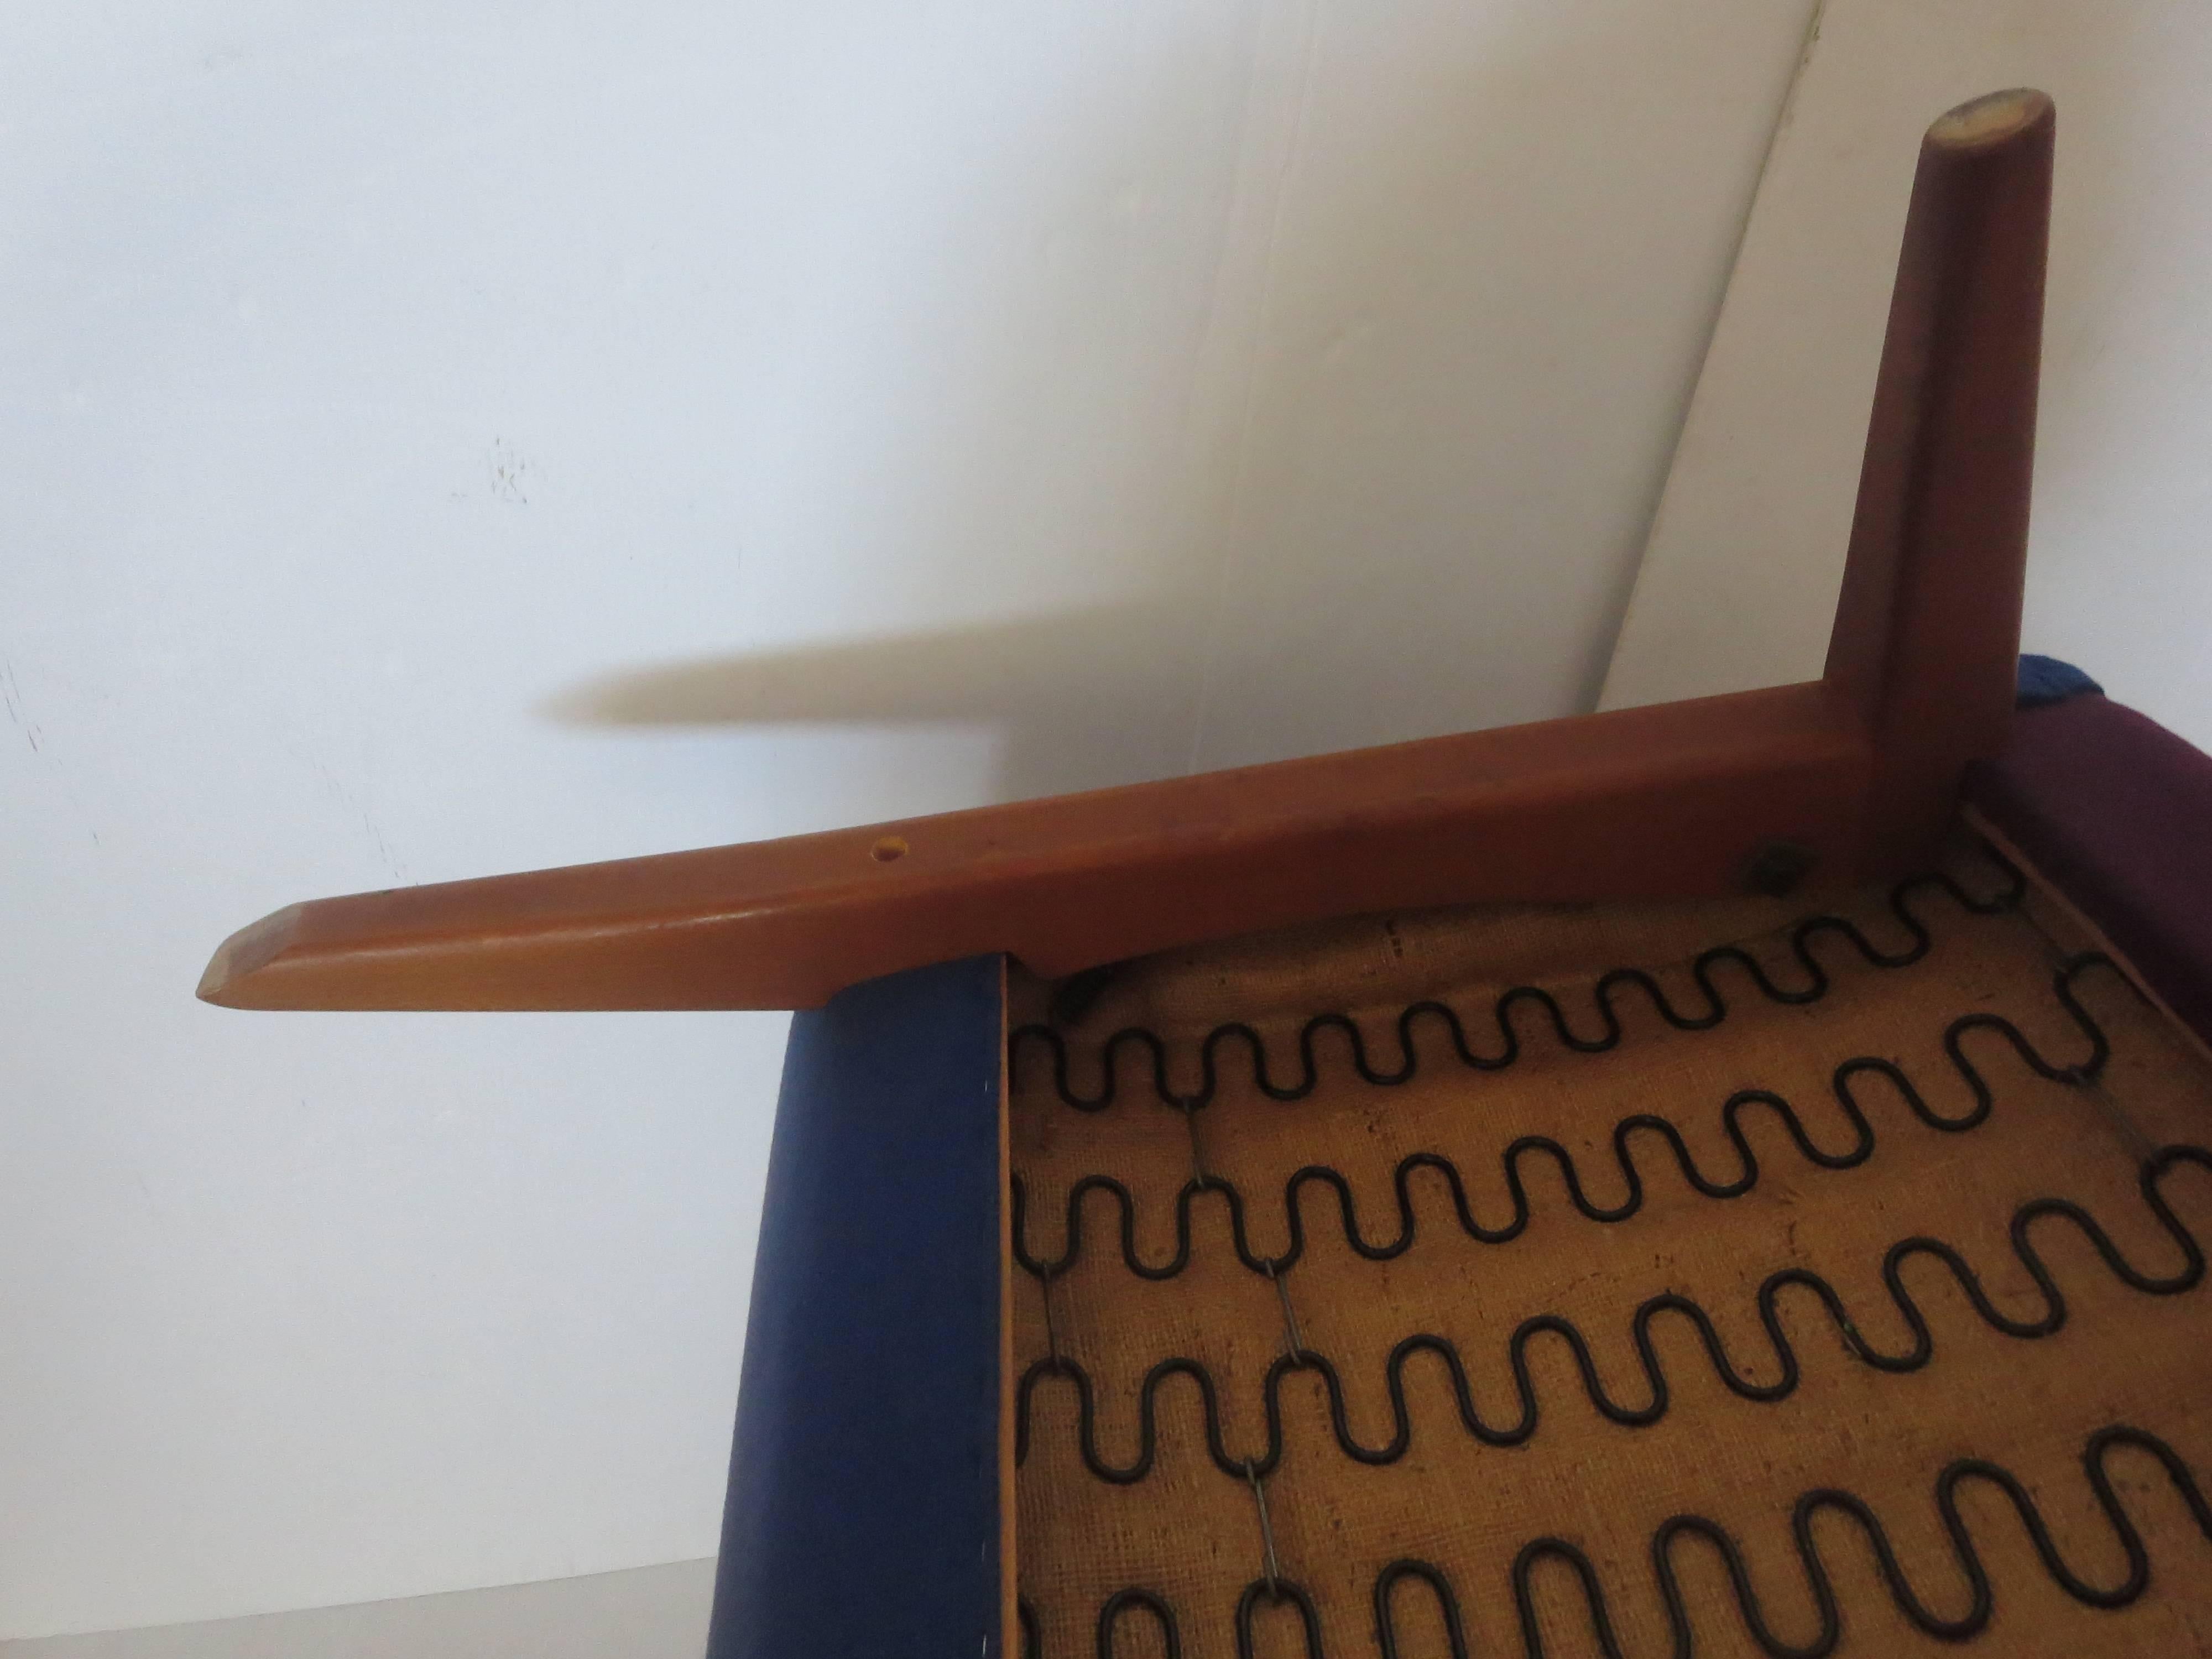 Rare Original Upholstery Lounge Chair by Folke Ohlsson for Fritz Hansen 1